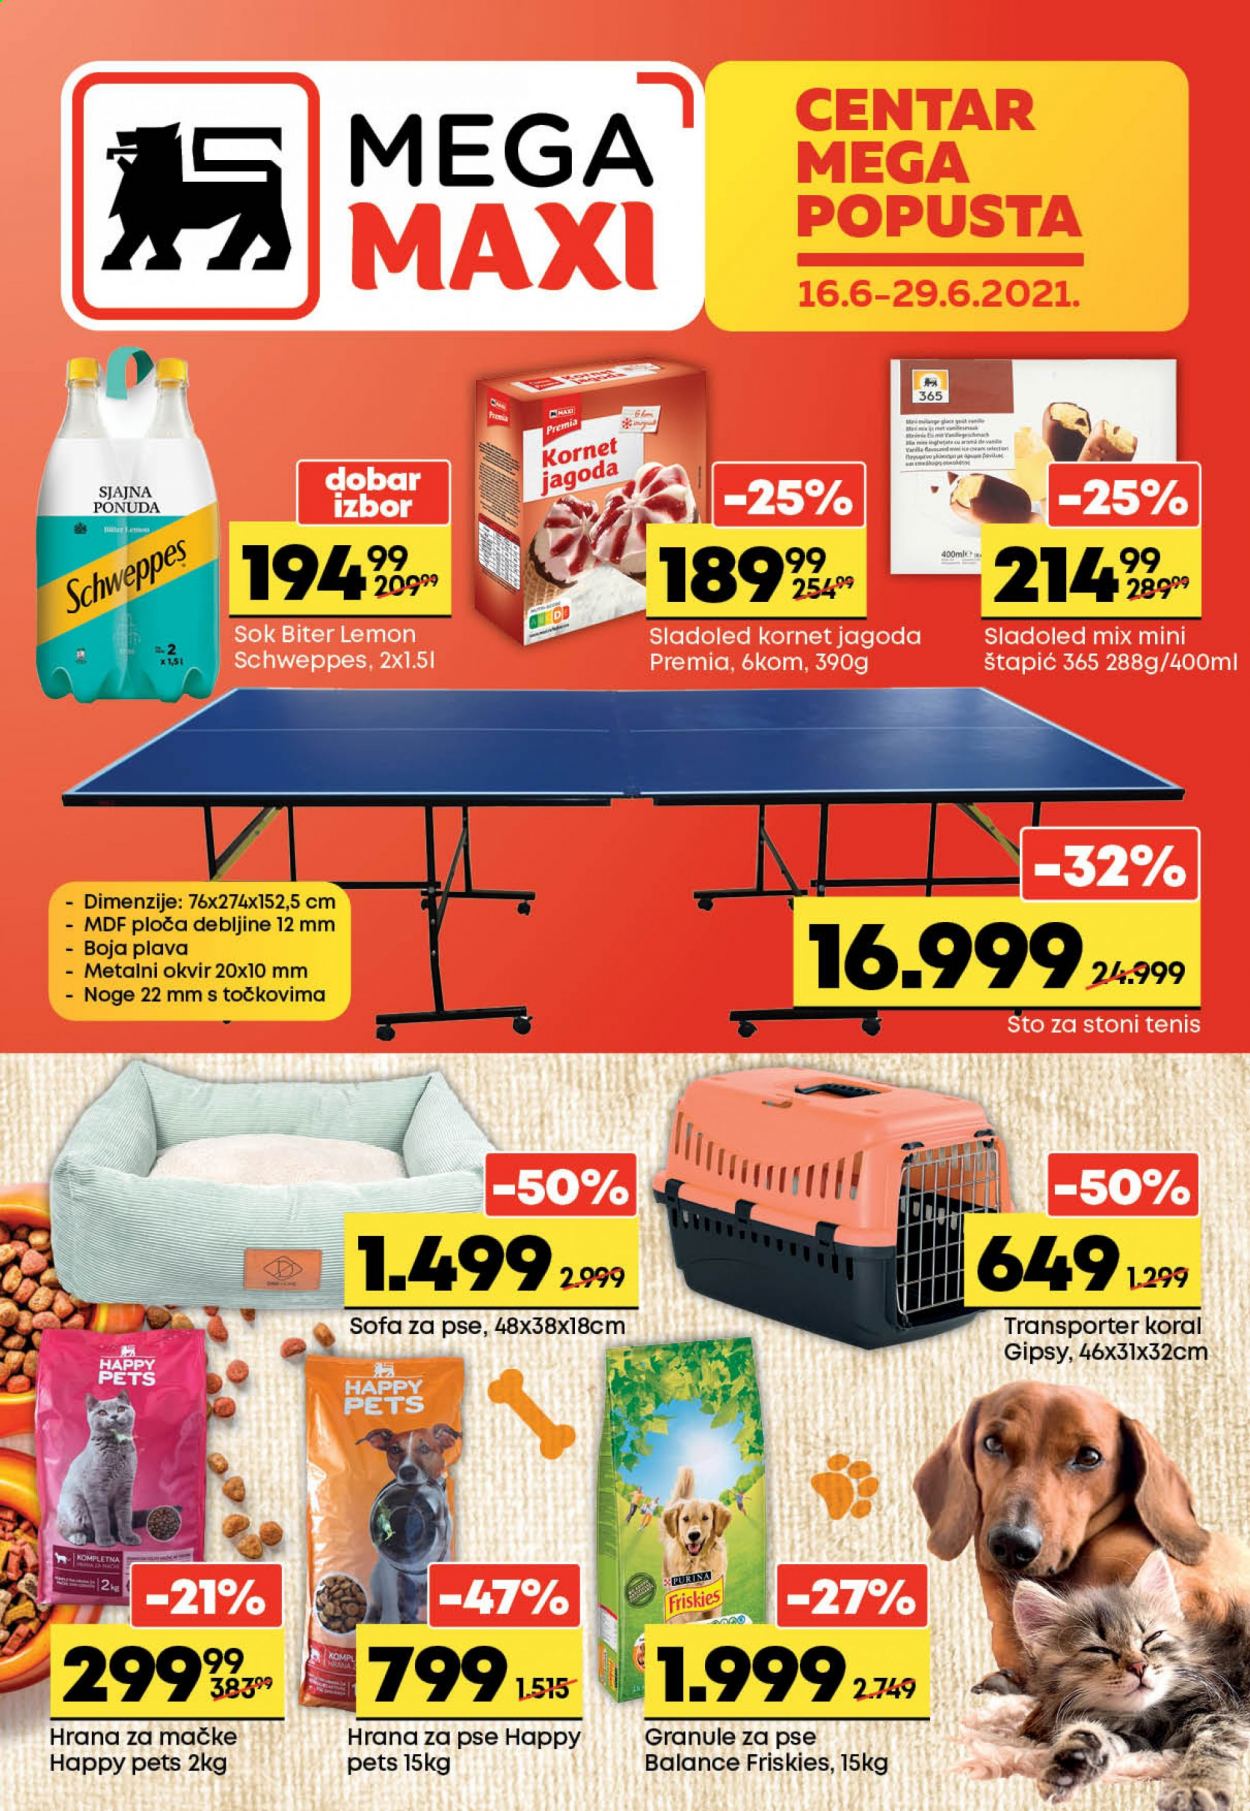 thumbnail - Mega Maxi katalog - 16.06.2021 - 29.06.2021 - Proizvodi na akciji - Schweppes, sok, limunada, sladoled, hrana za mačke, hrana za pse, Purina, Friskies, set za stoni tenis. Stranica 1.